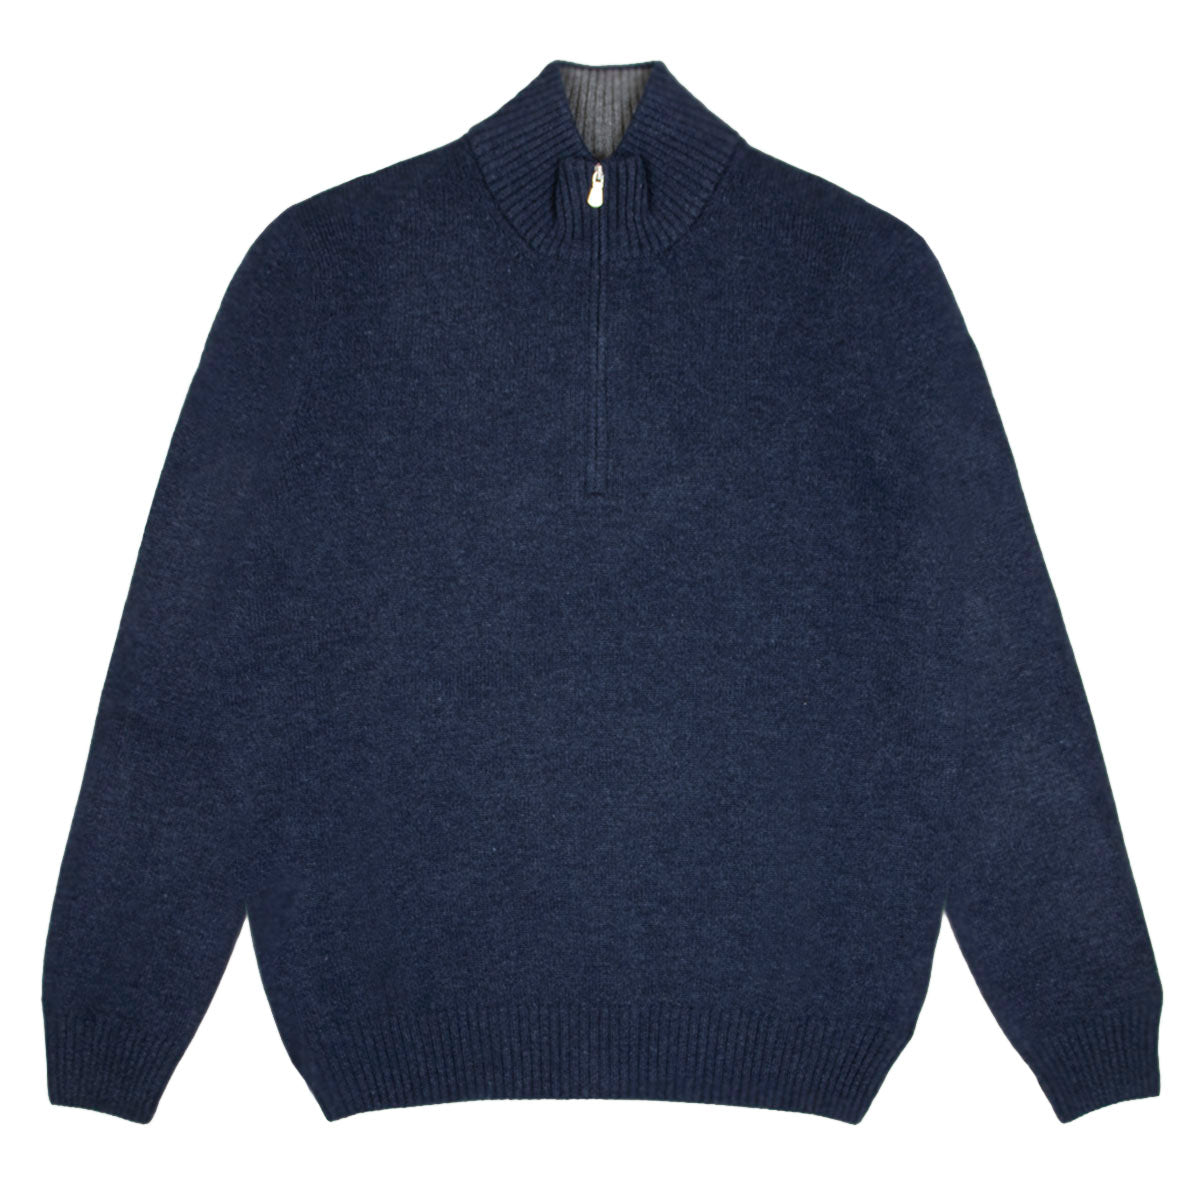 Navy Contrast Virgin Wool & Cashmere Zip Neck Sweater  Robert Old   